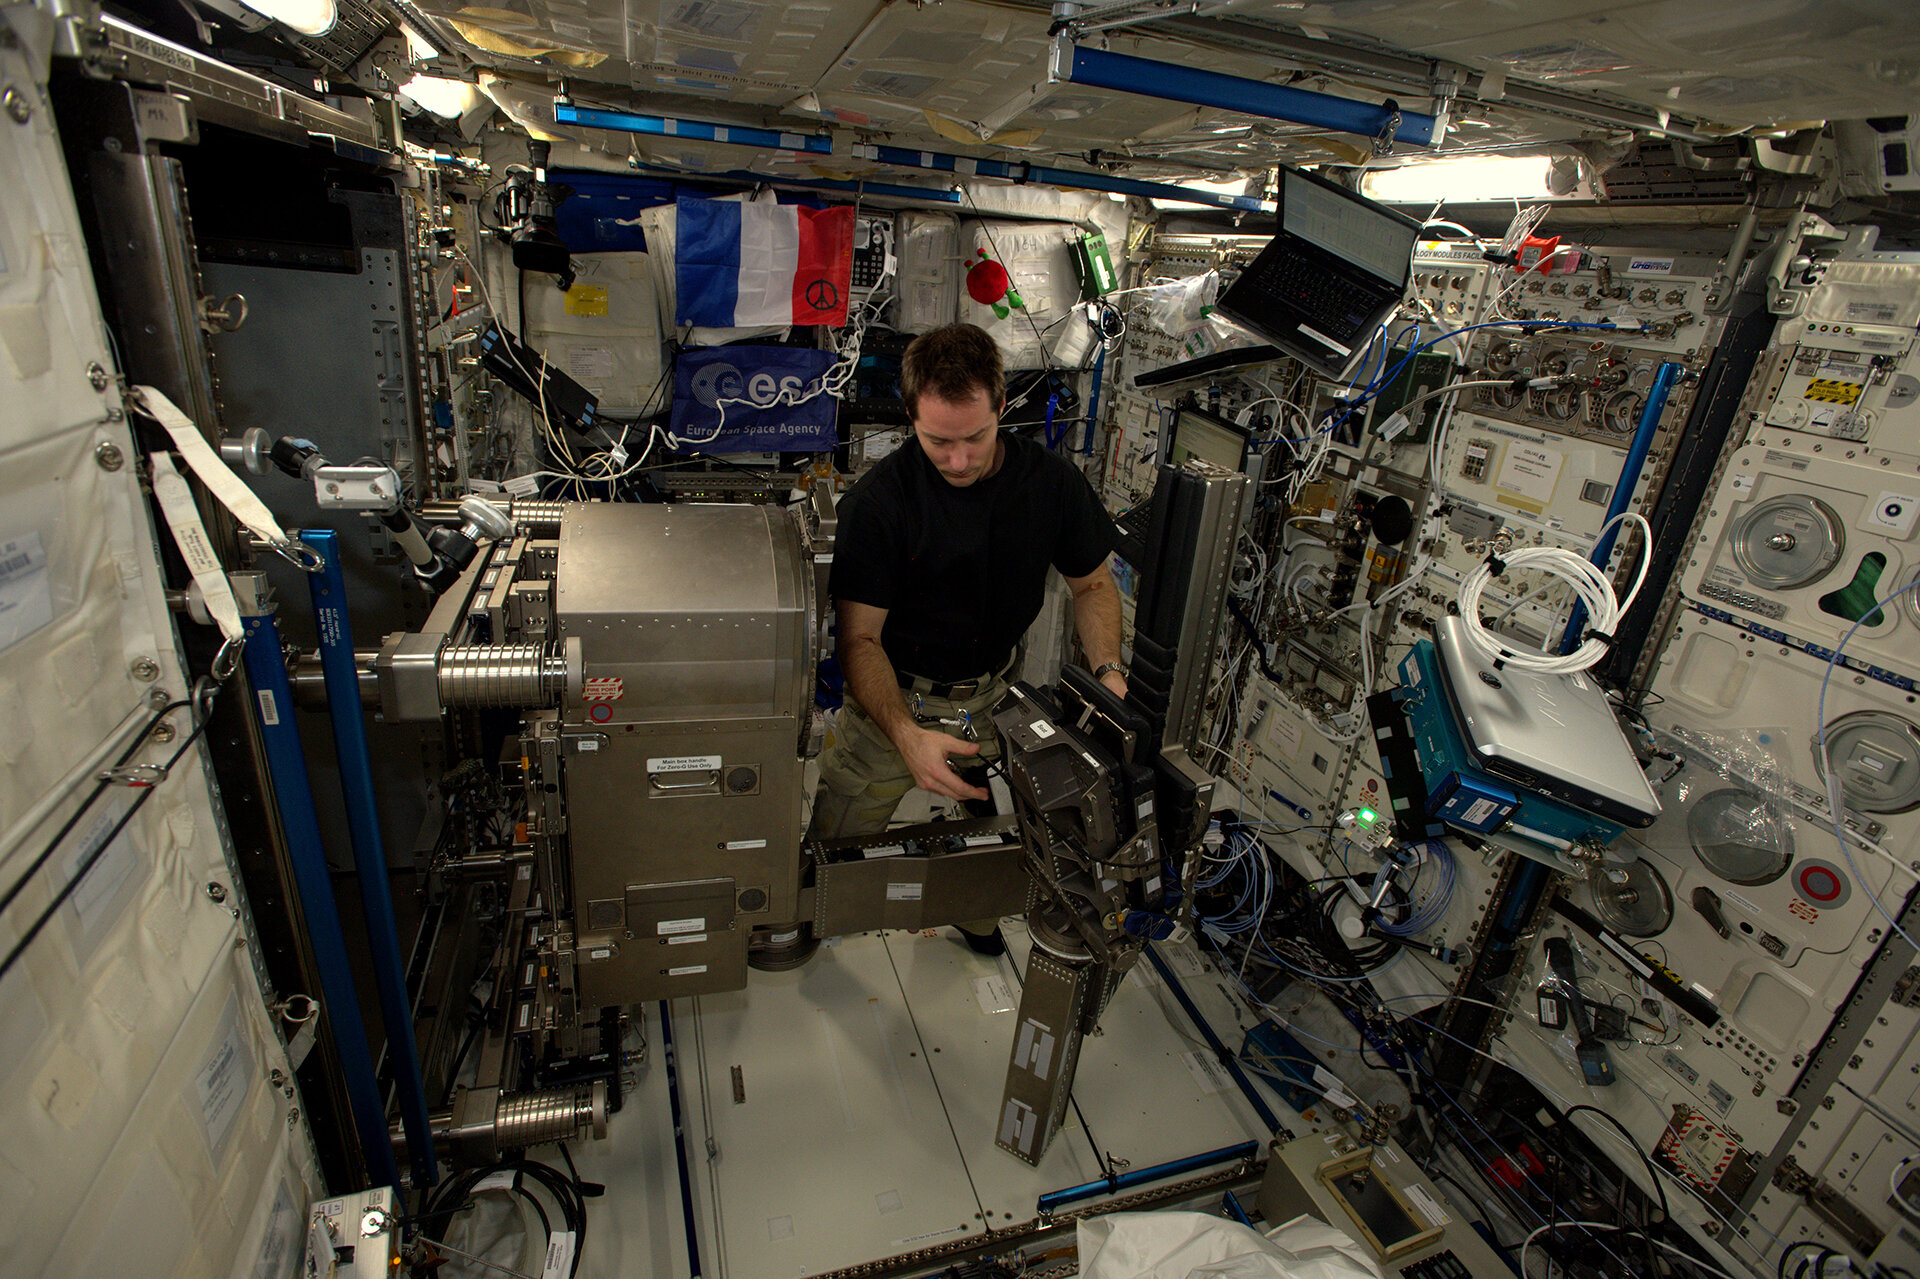 Lihasatroofia uurimise ja treeningsüsteem Mares on kolm ühes süsteem ISS-il, et jälgida treeningu ajal astronautide lihaseid. Sel nädalal paigaldab ESA astronaut Thomas Pesquet masina Euroopa Columbuse kosmoselaborisse. Allikas: ESA/NASA.